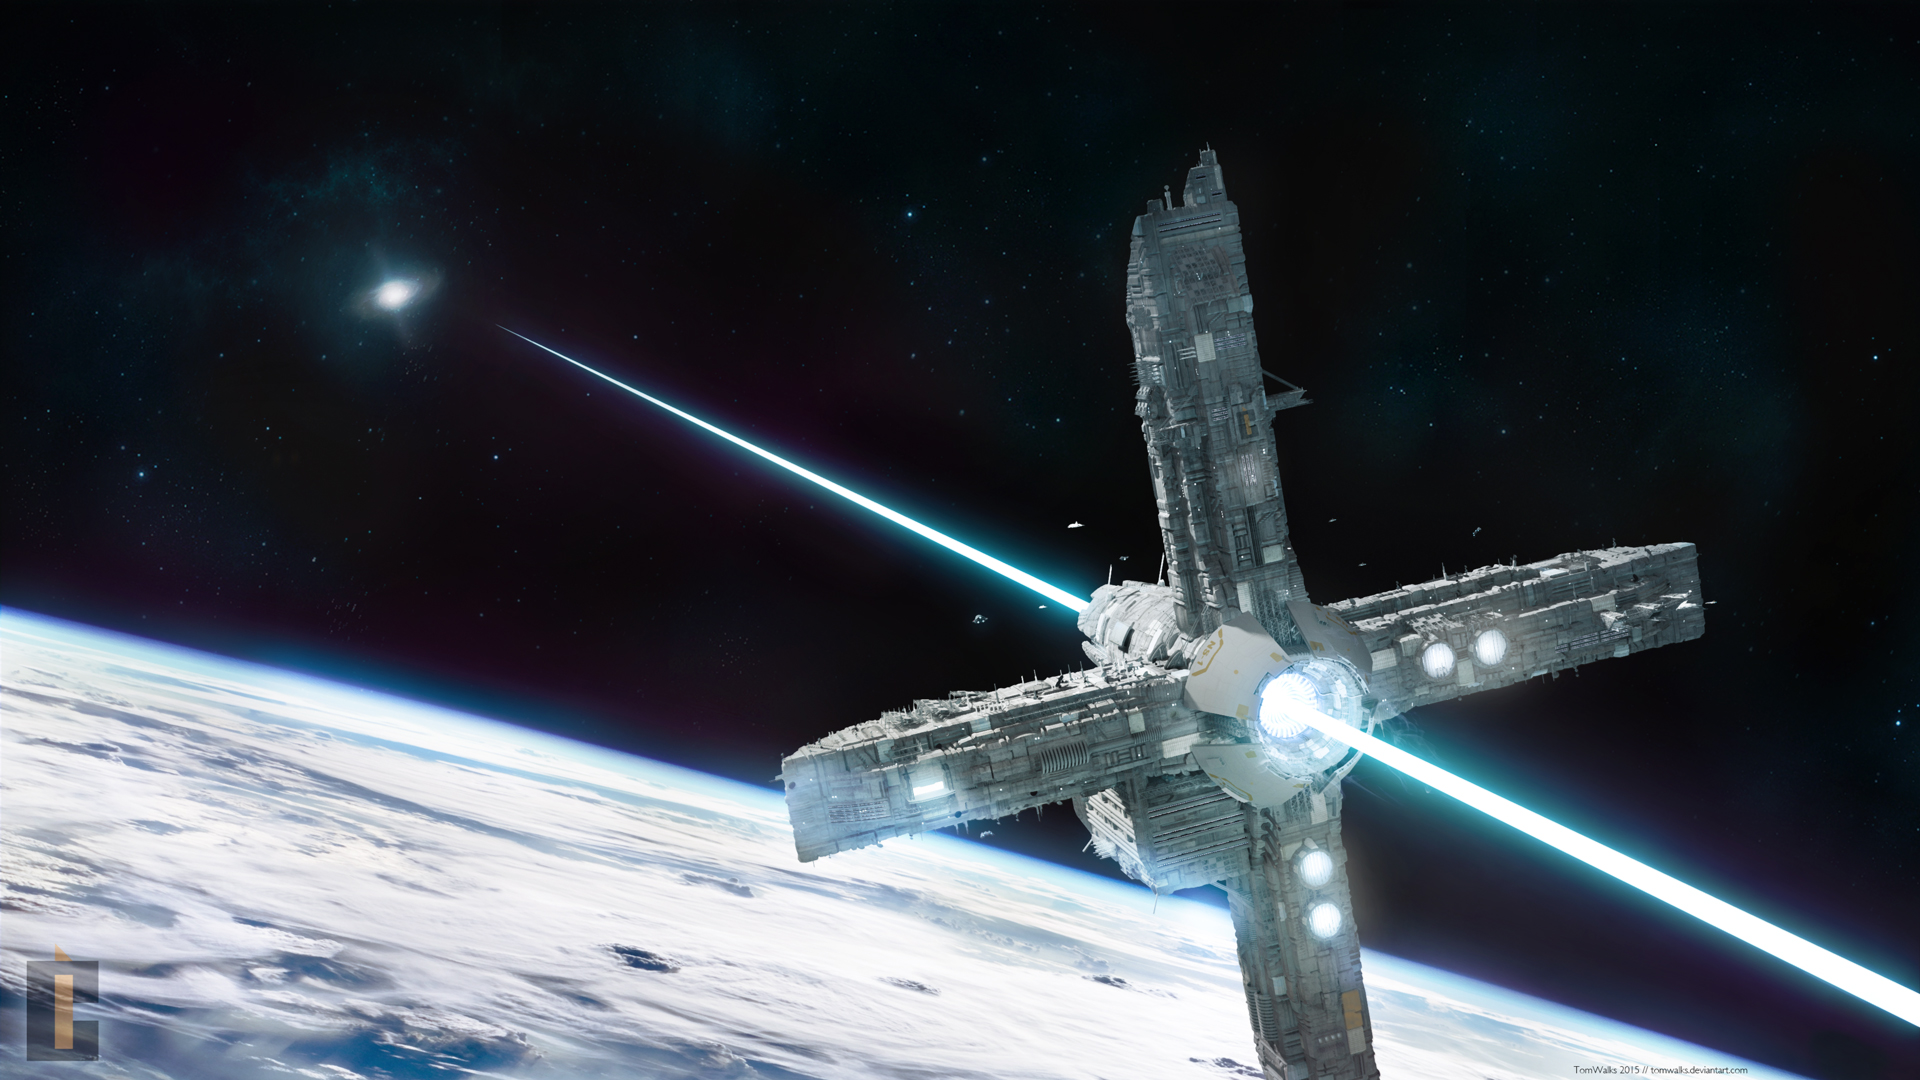 Beam Sailor _ Space station concept (Blender, 3D)